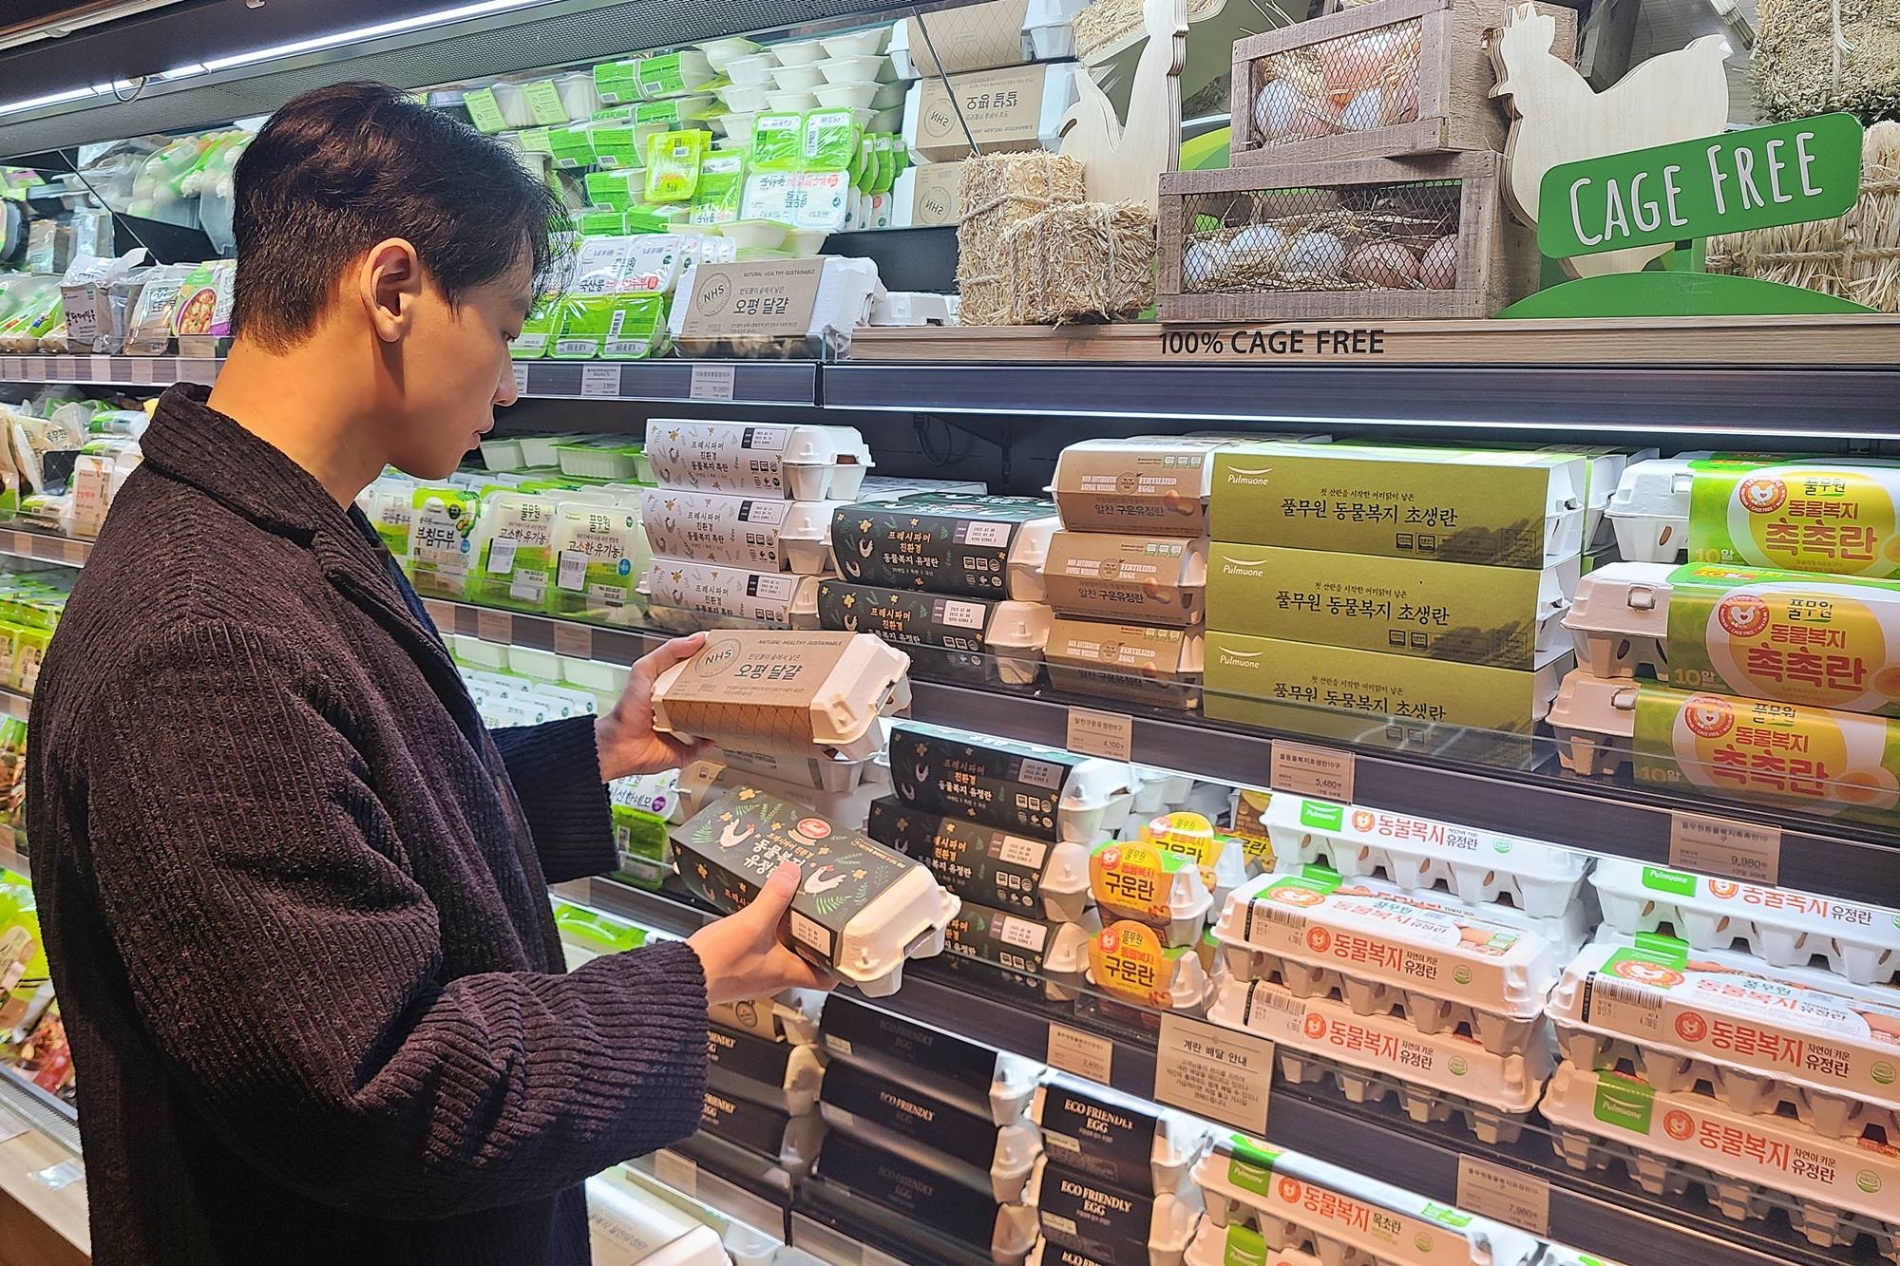 서울 갤러리아명품관 식품관 고메이494에서 한 고객이 케이지 프리 달걀을 살펴보고 있다./ 사진제공 = 한화갤러리아